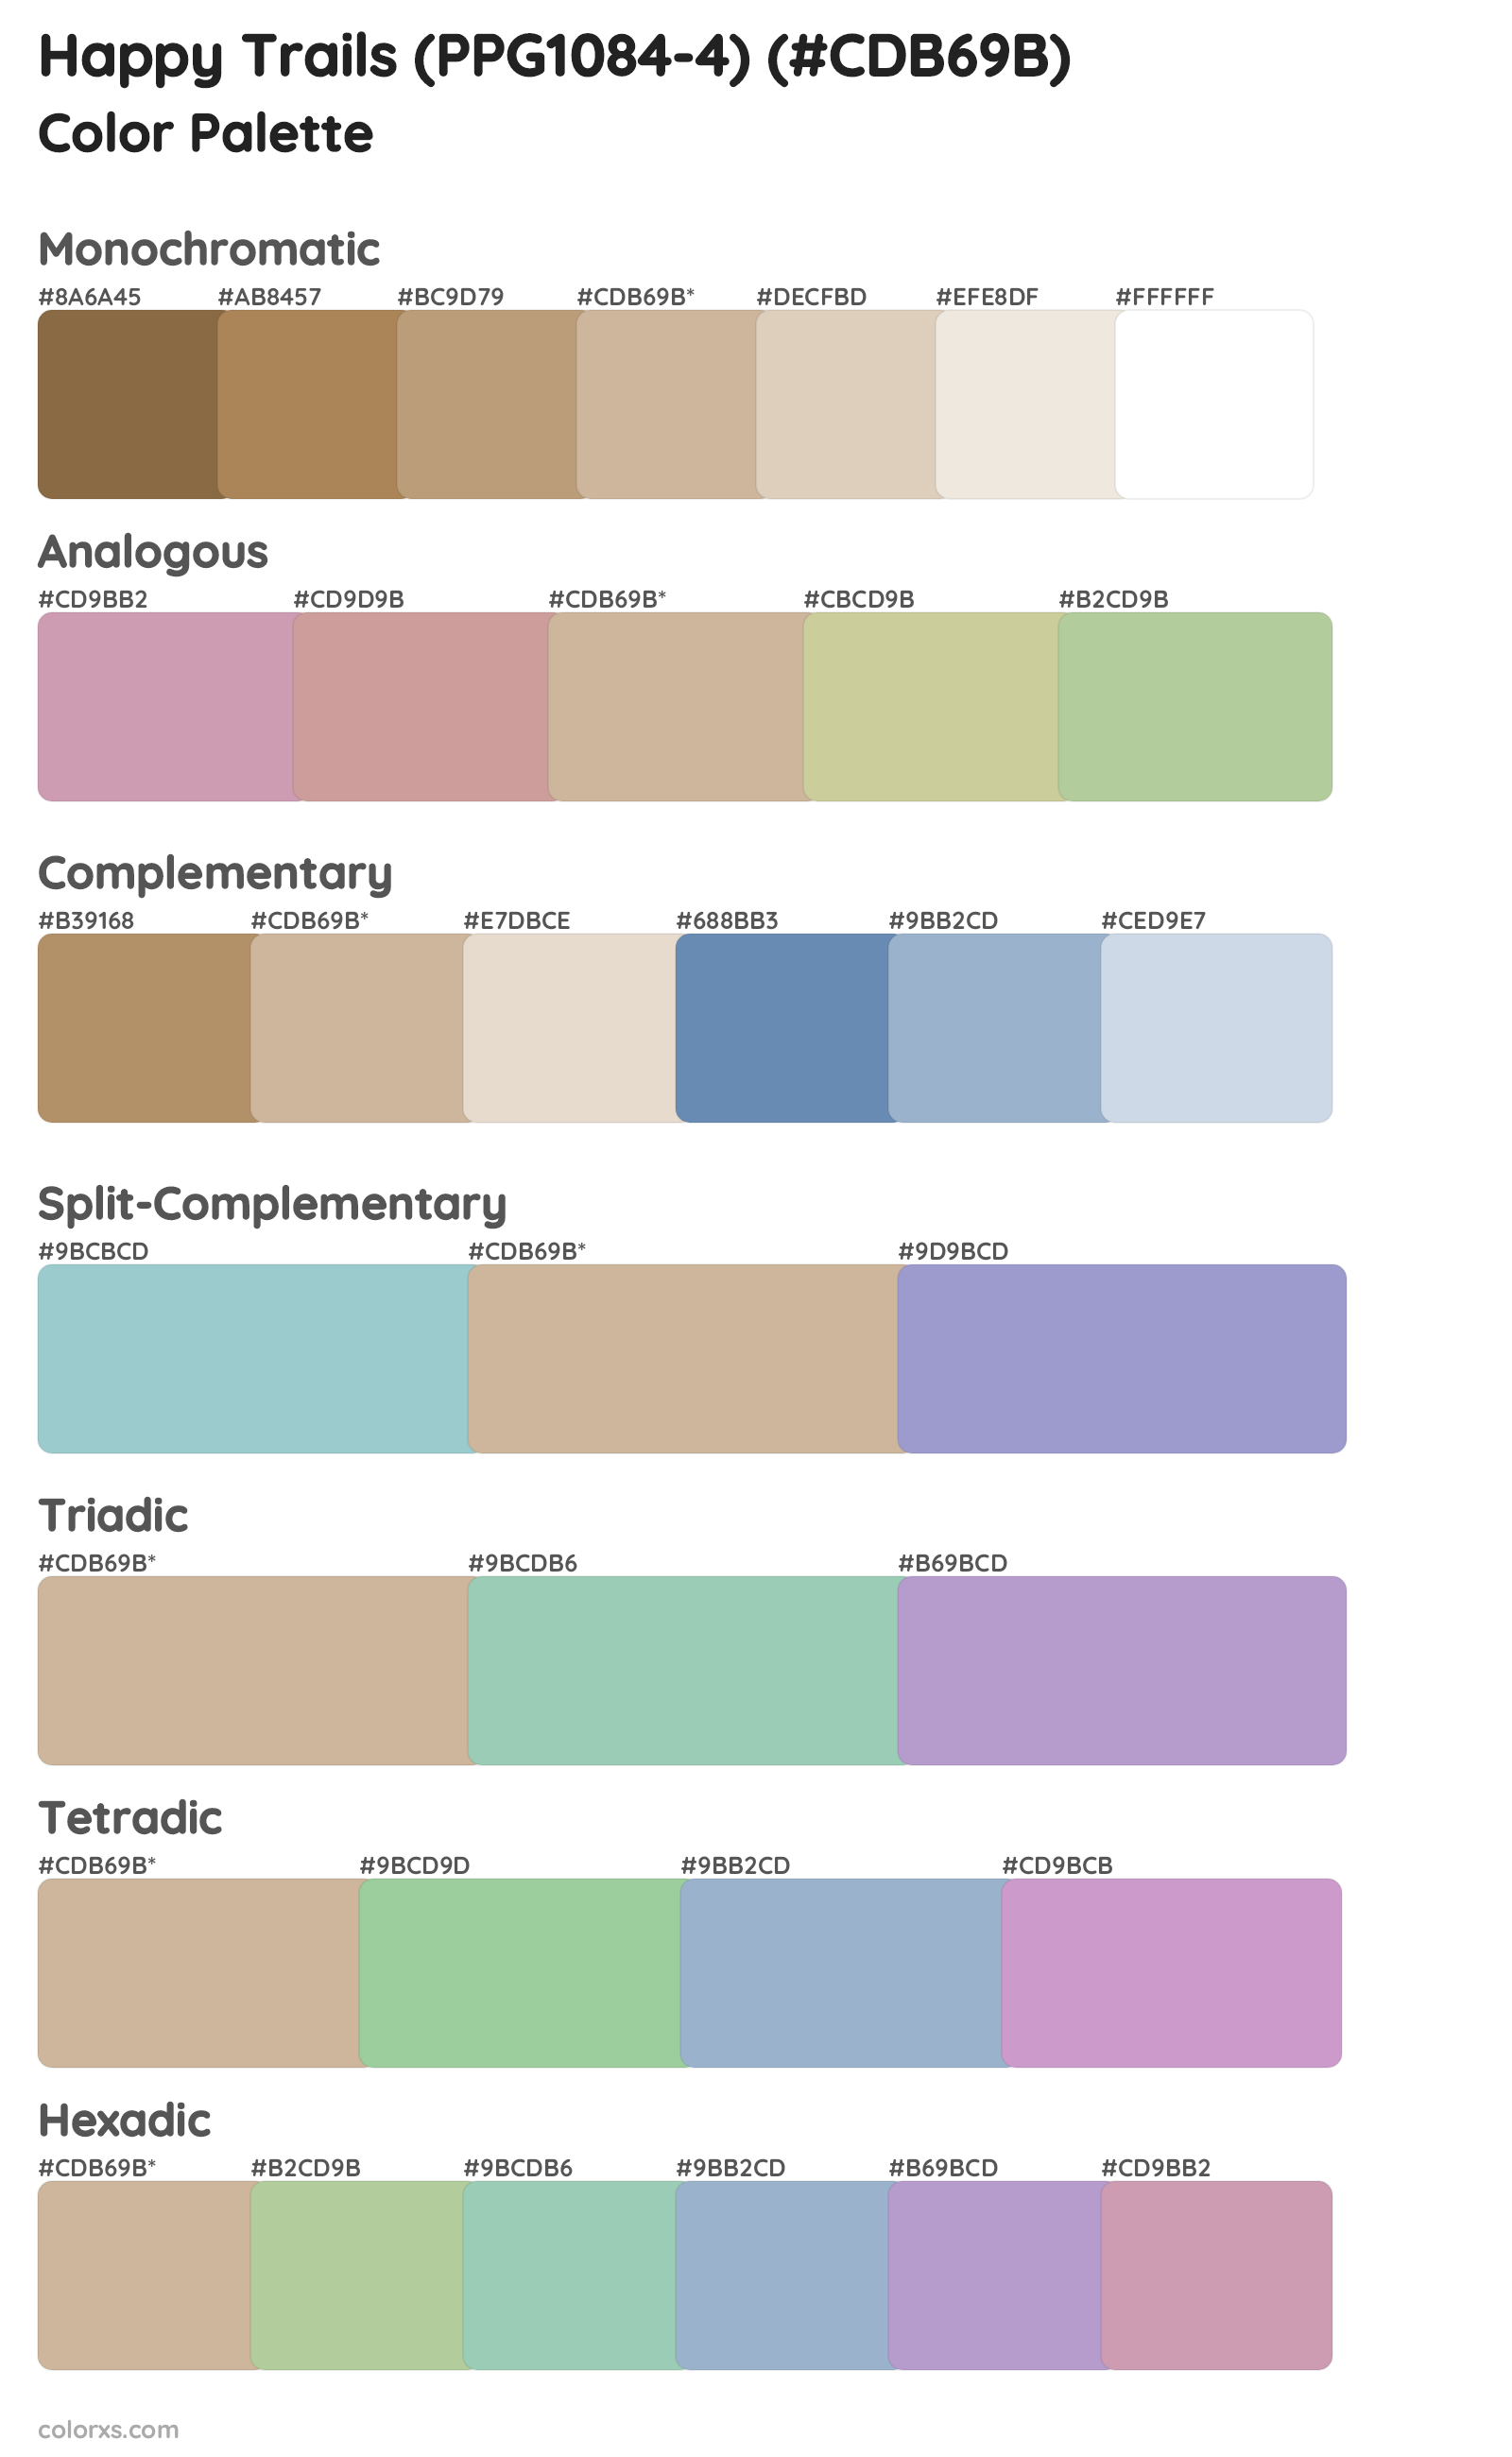 Happy Trails (PPG1084-4) Color Scheme Palettes